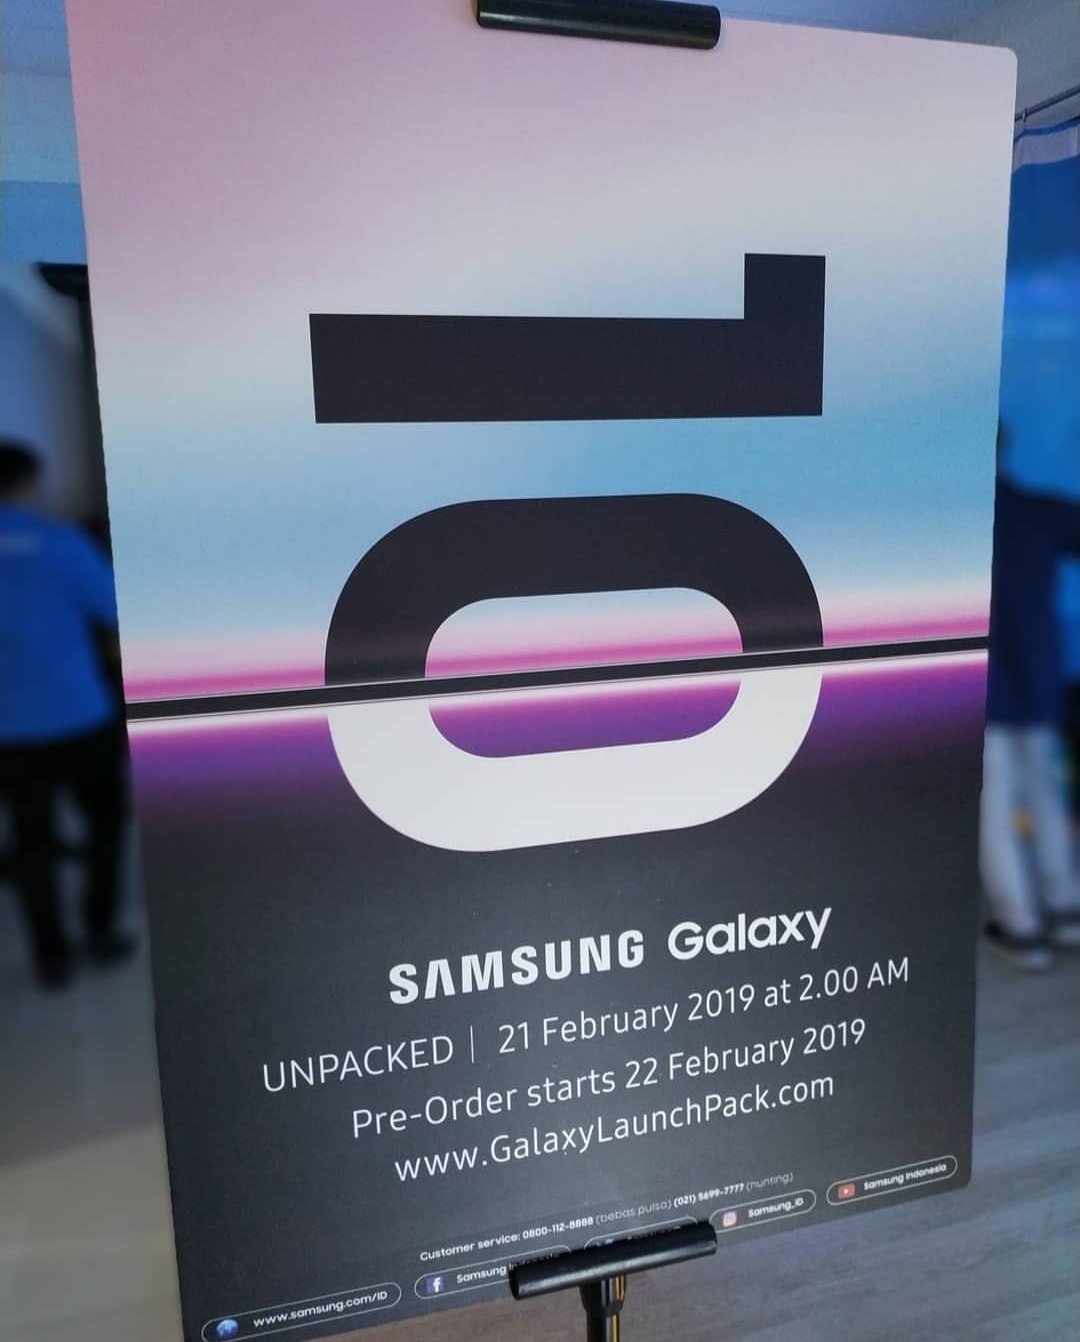 Samsung Galaxy S10 ön sipariş tarihi